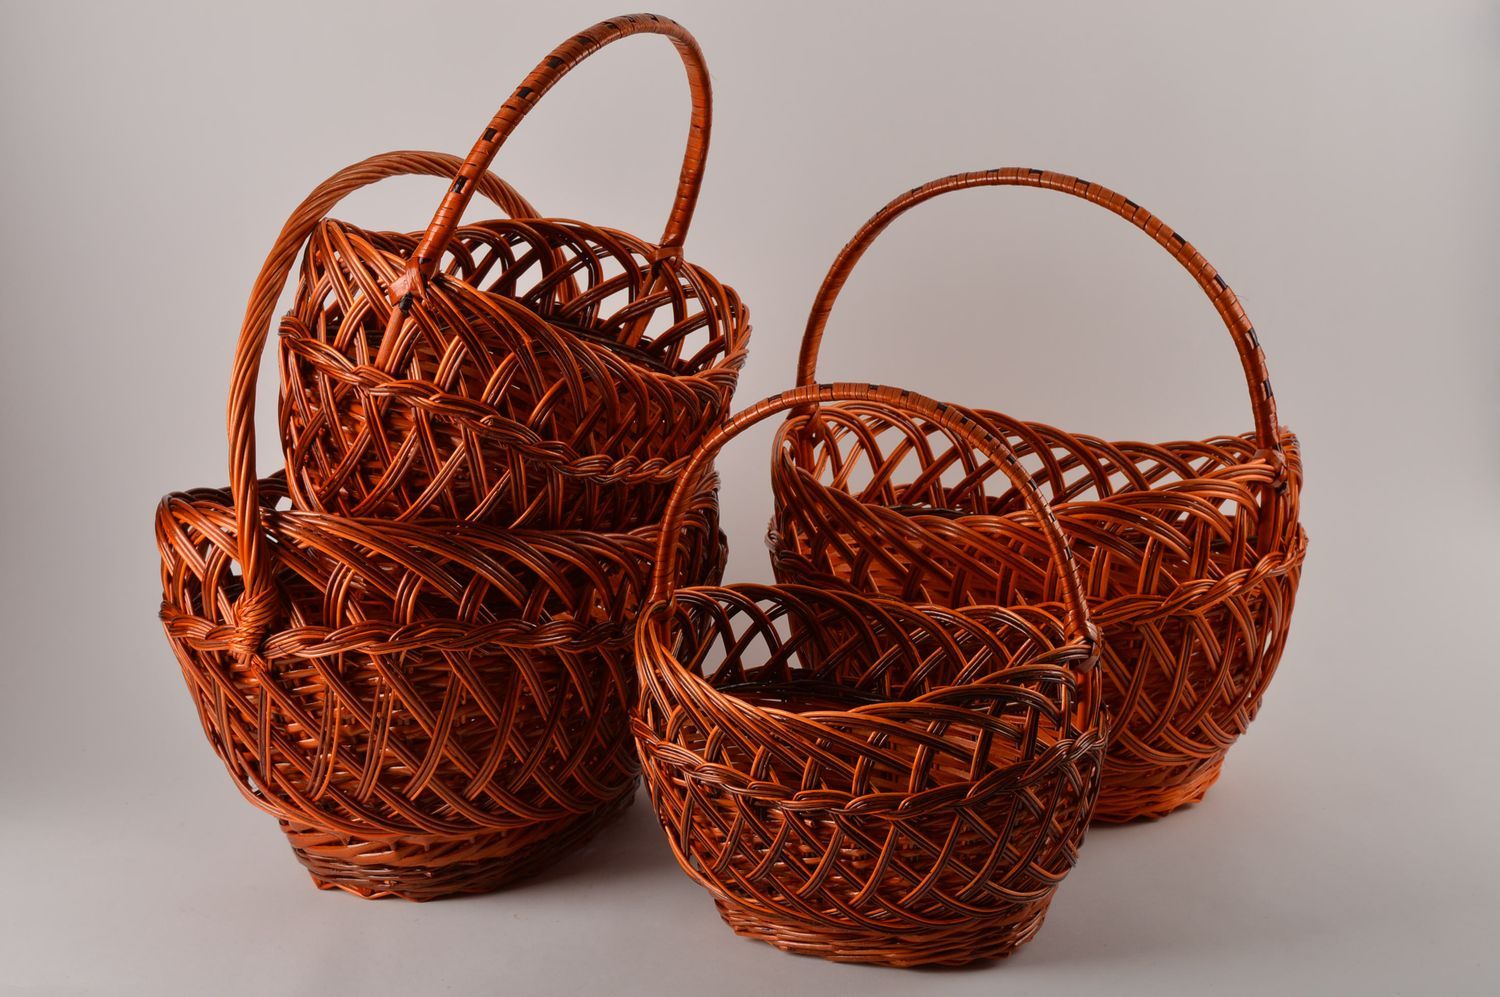 Handmade designer woven baskets 4 baskets for Easter decorative baskets photo 2